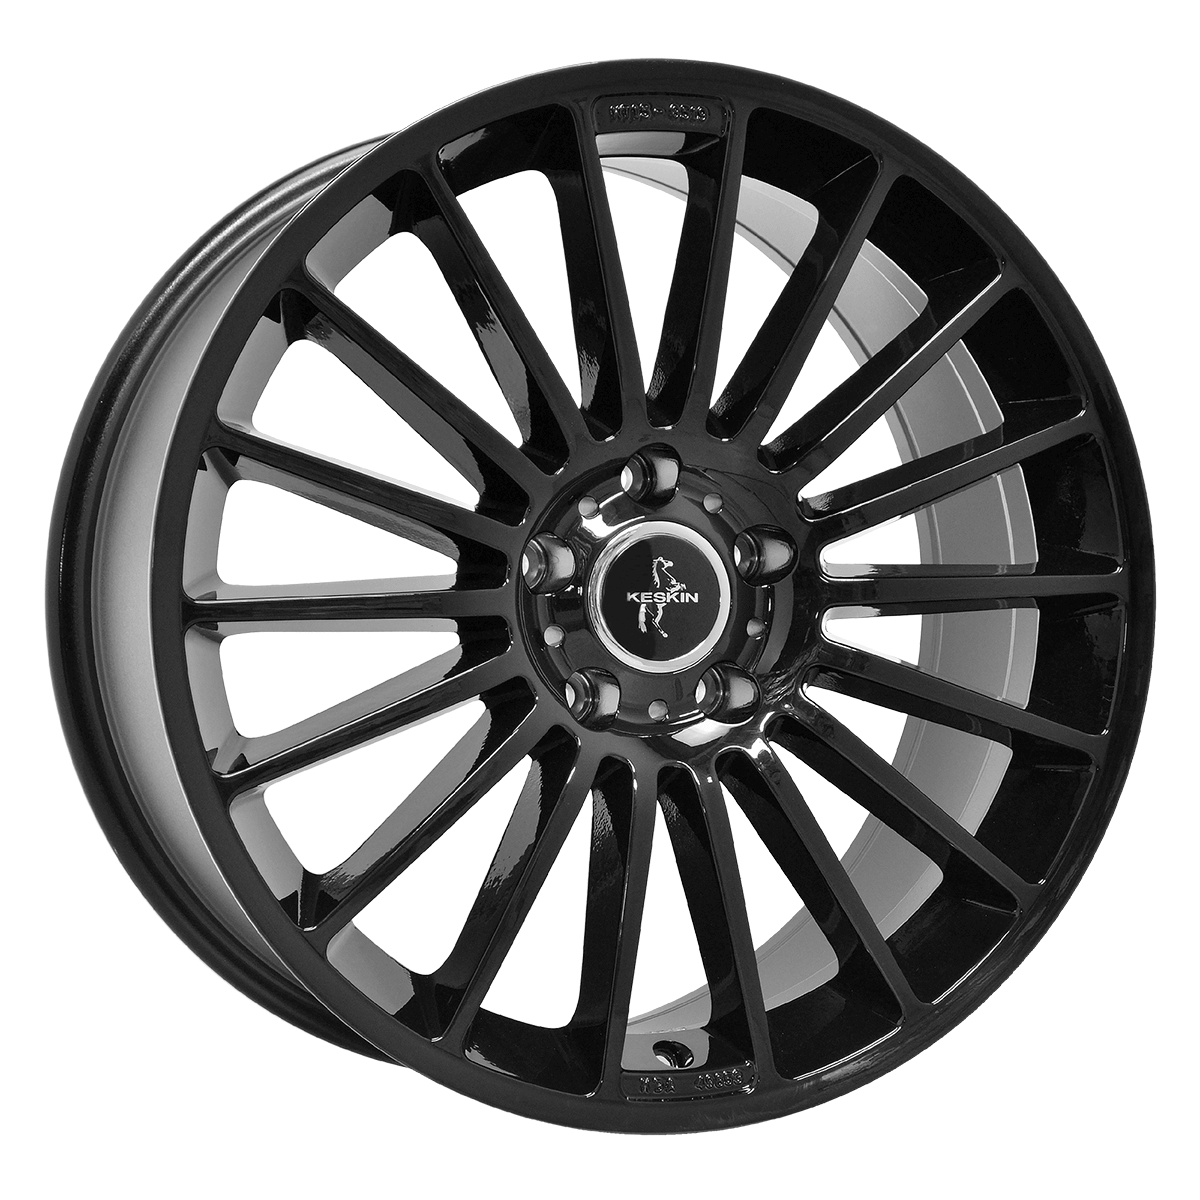 Keskin-KT15-Black-Painted-Black-20x8.5-66.6-wheels-rims-felger-Felghuset